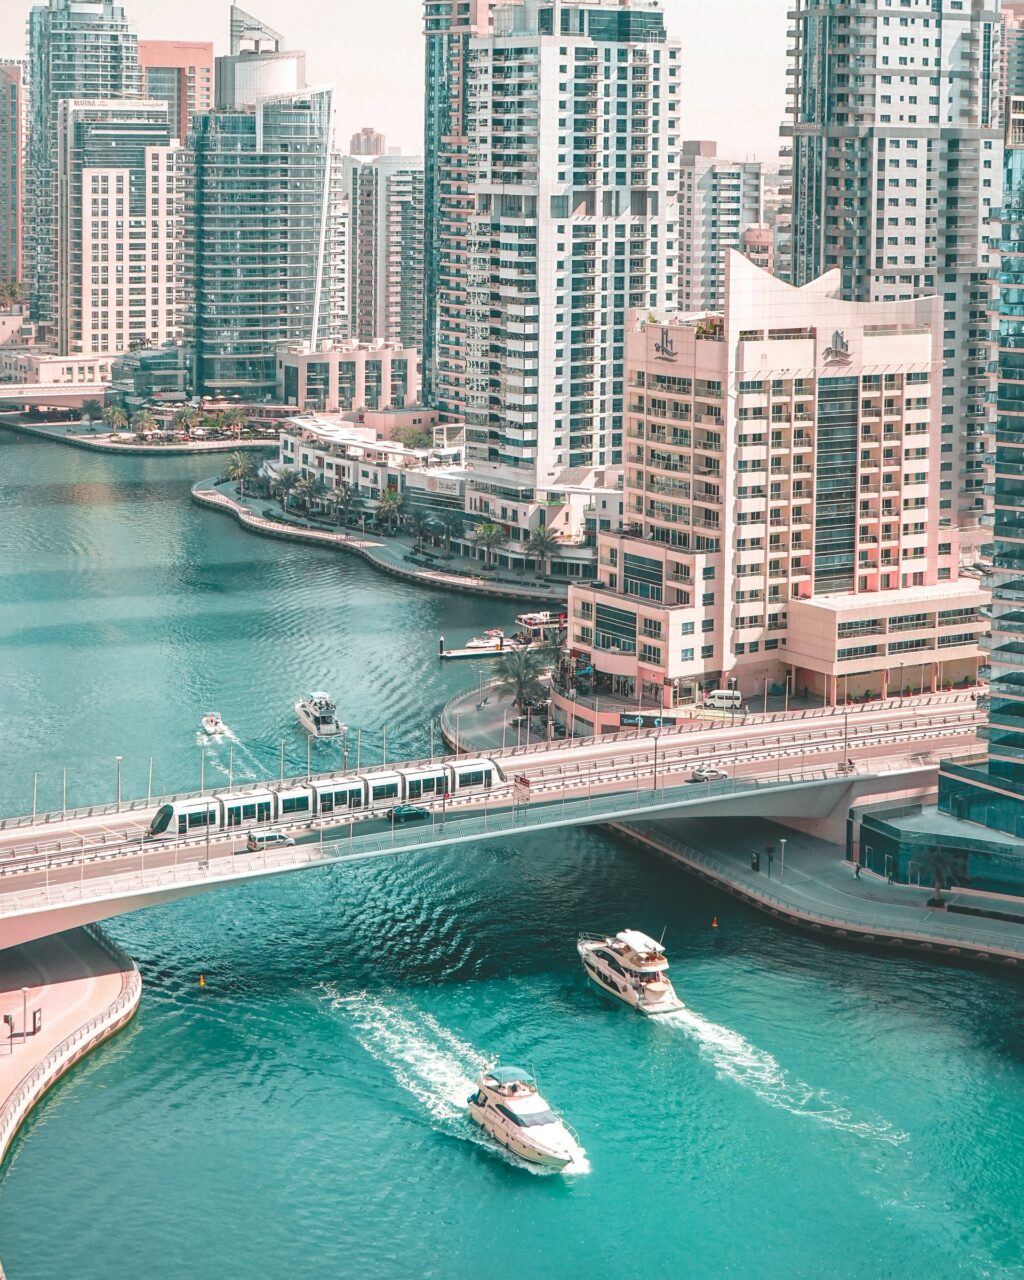 Dubai marina from above